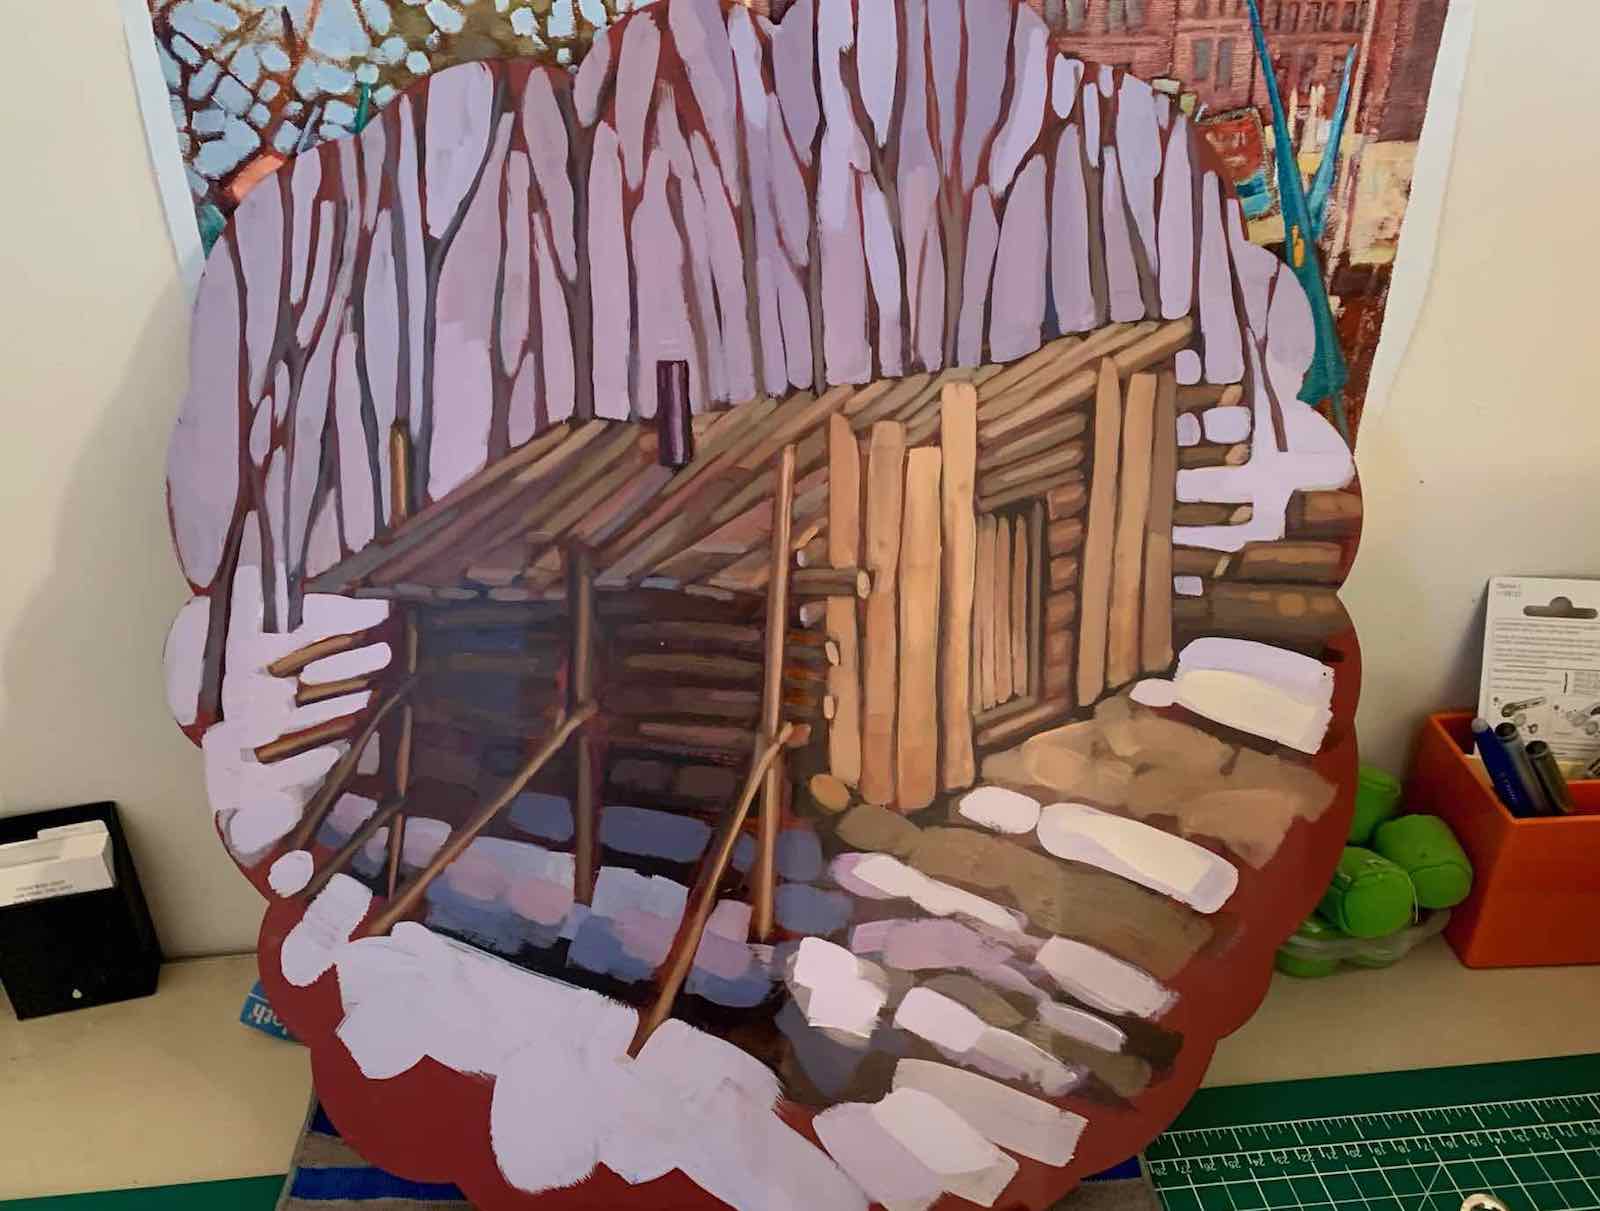 Art Trees of Oro-Medonte shack